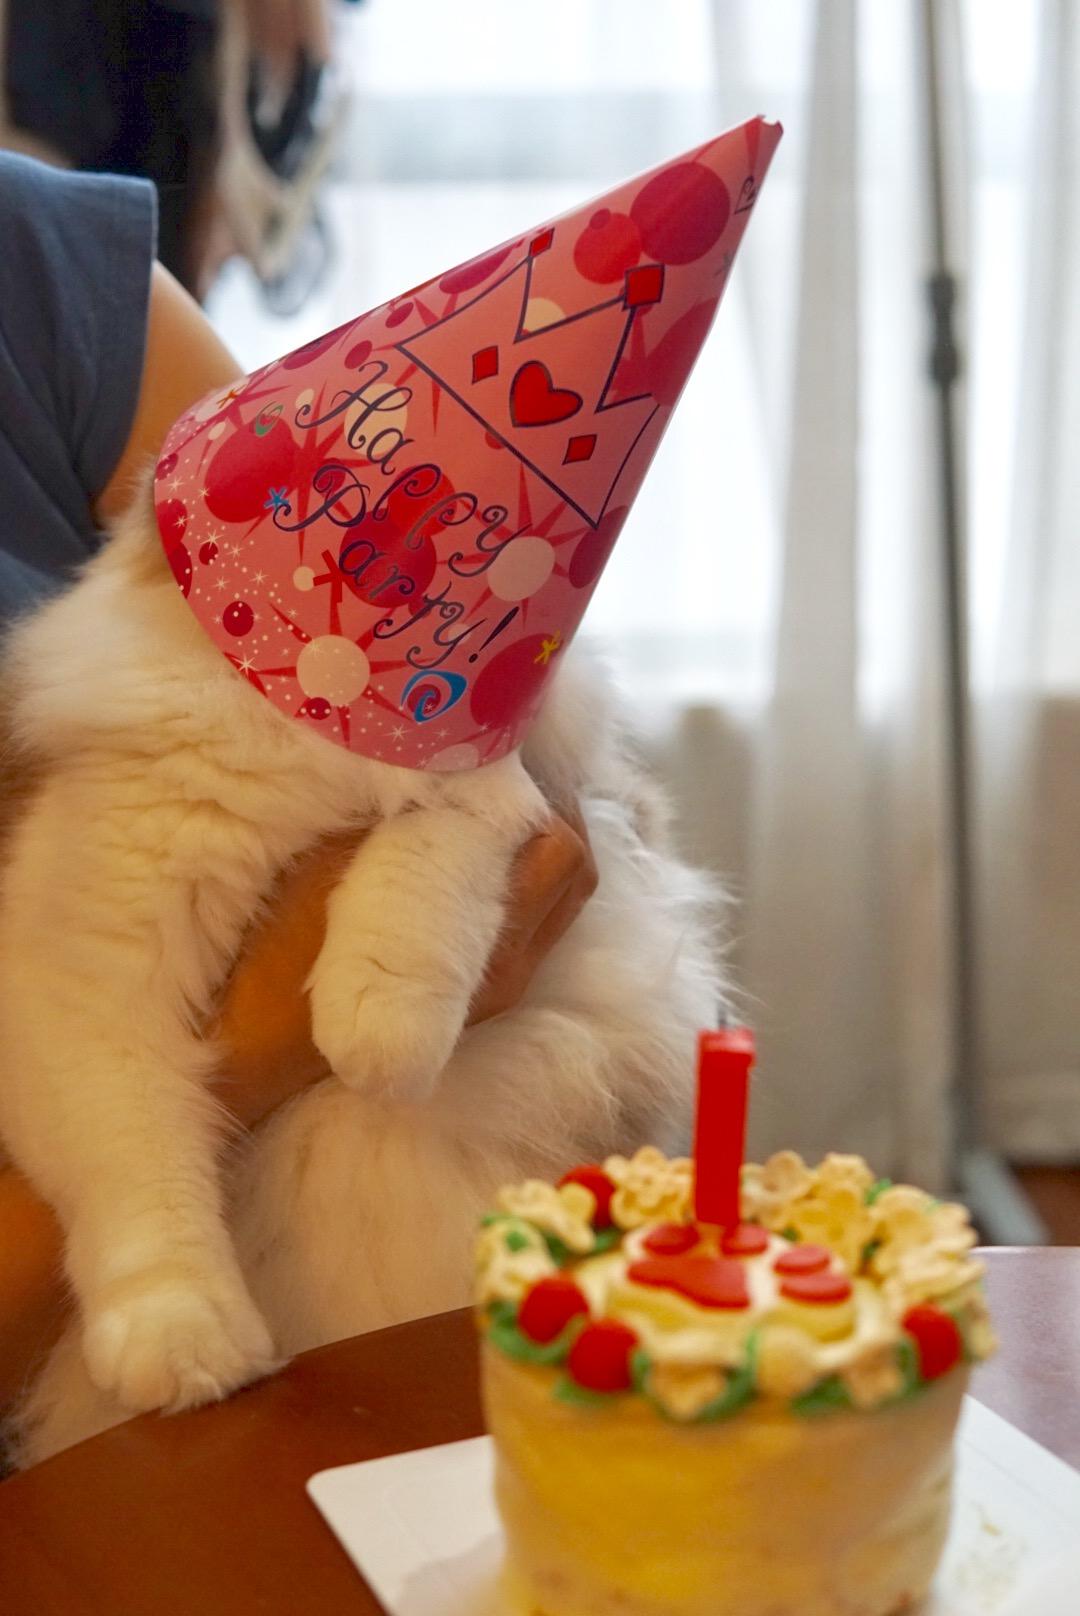 生日猫 库存图片. 图片 包括有 盖帽, 空白, 背包, 小猫, 几年, 全部赌注, 似猫, 纯血统, 生日 - 64985353